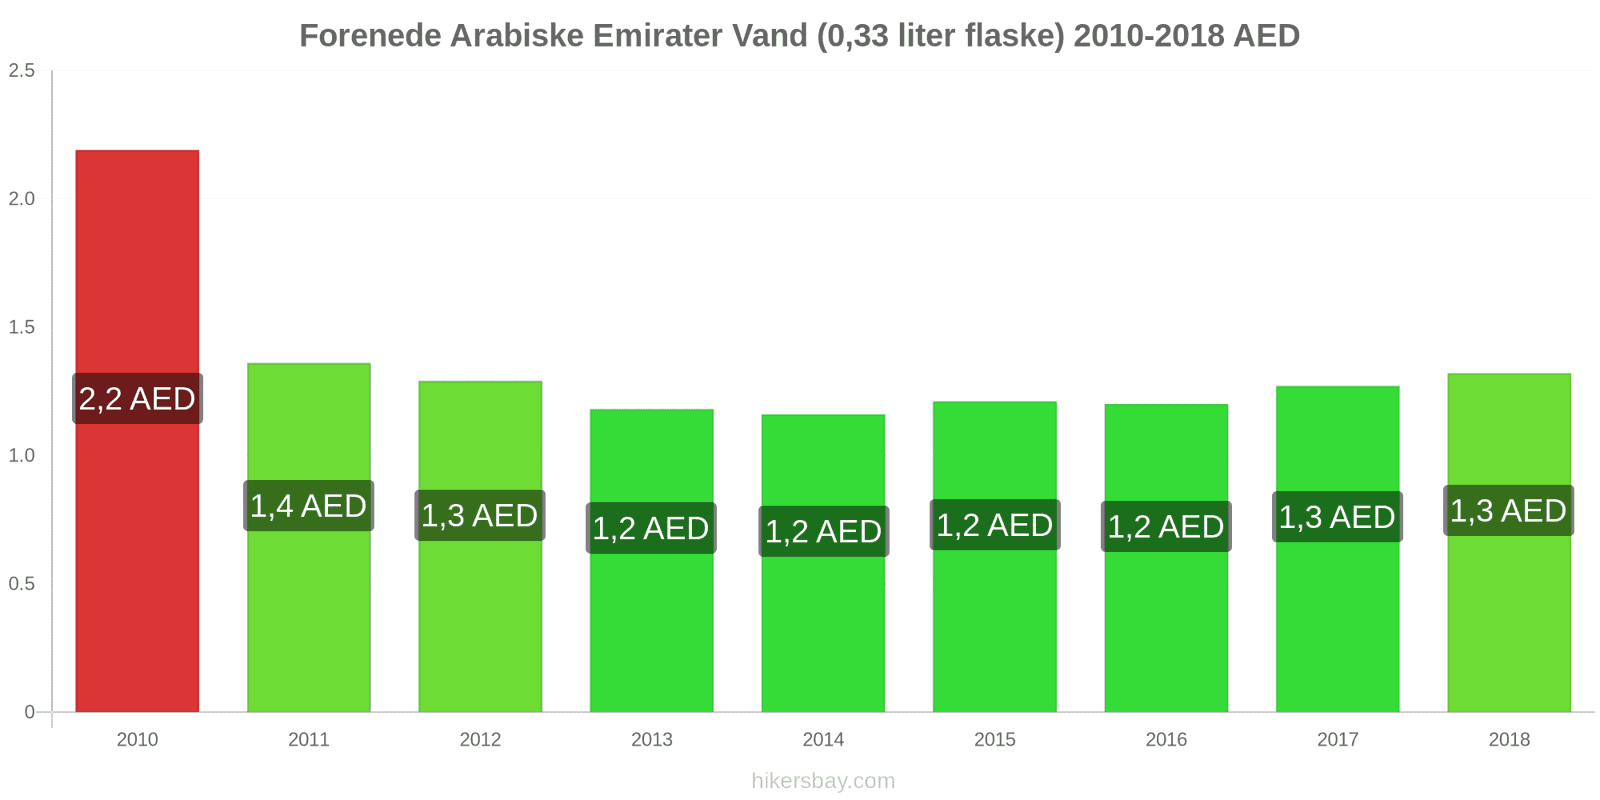 Forenede Arabiske Emirater prisændringer Vand (0.33 liter flaske) hikersbay.com